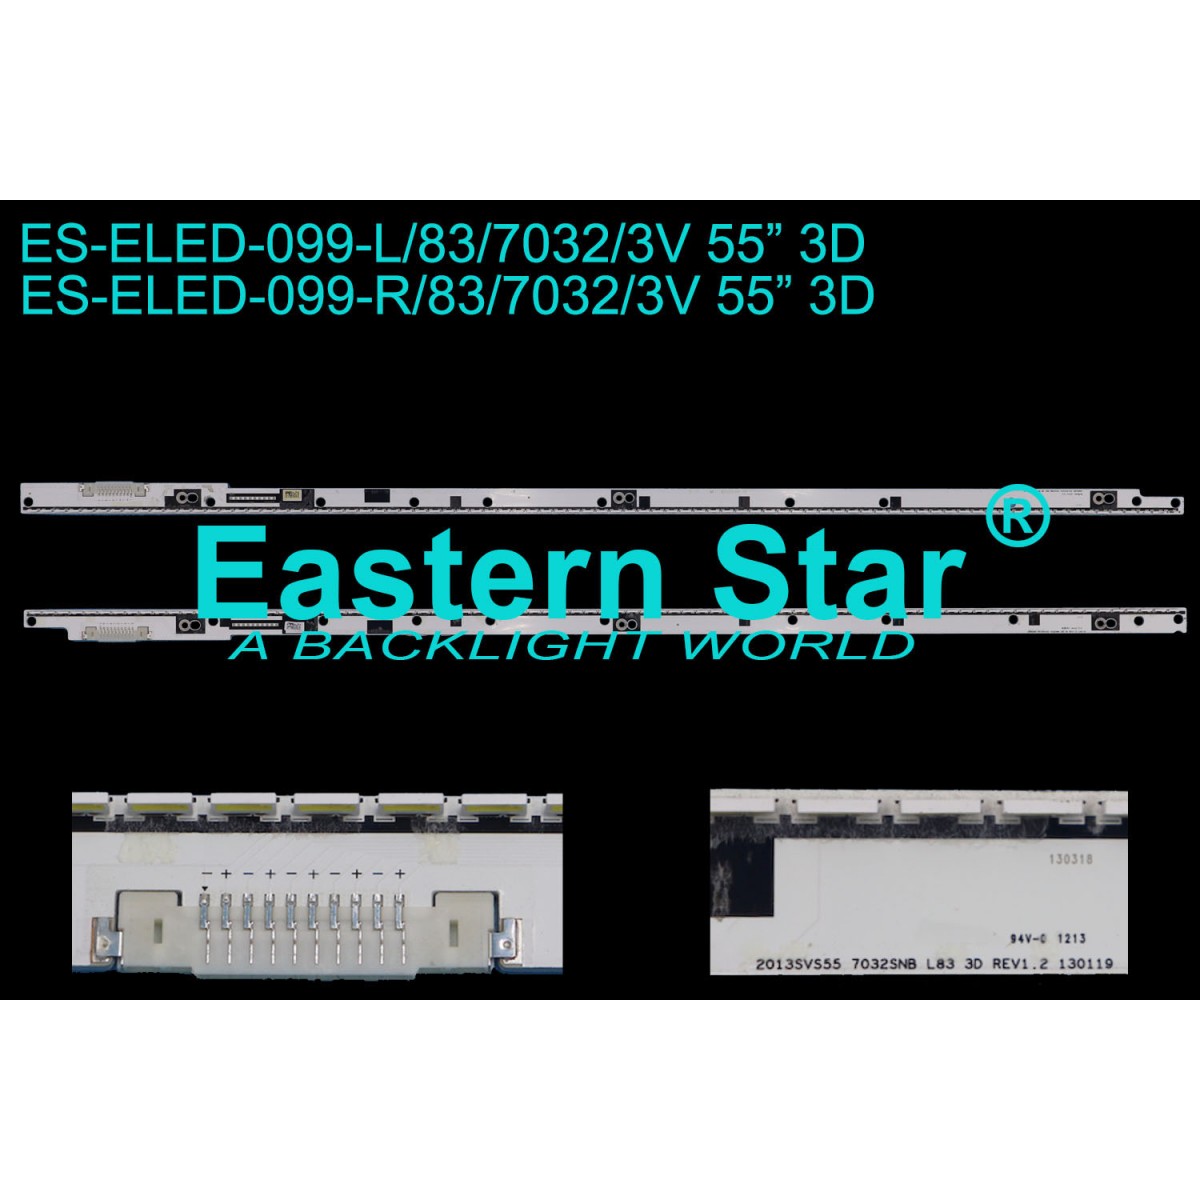 ES-ELED-099, SAMSUNG, BN96-25447A, BN96-25448A, BN96-29657A, BN96-29658A, HG55EB890XB, UE55C, UE55F7000SL, UE55F8000SL, UE55F8500SL, V3LE-550SMA-R4, V3LE-550SMB-R4, 2013SVS55 7032SNB L83 REV1.2 130119, TV LED BAR